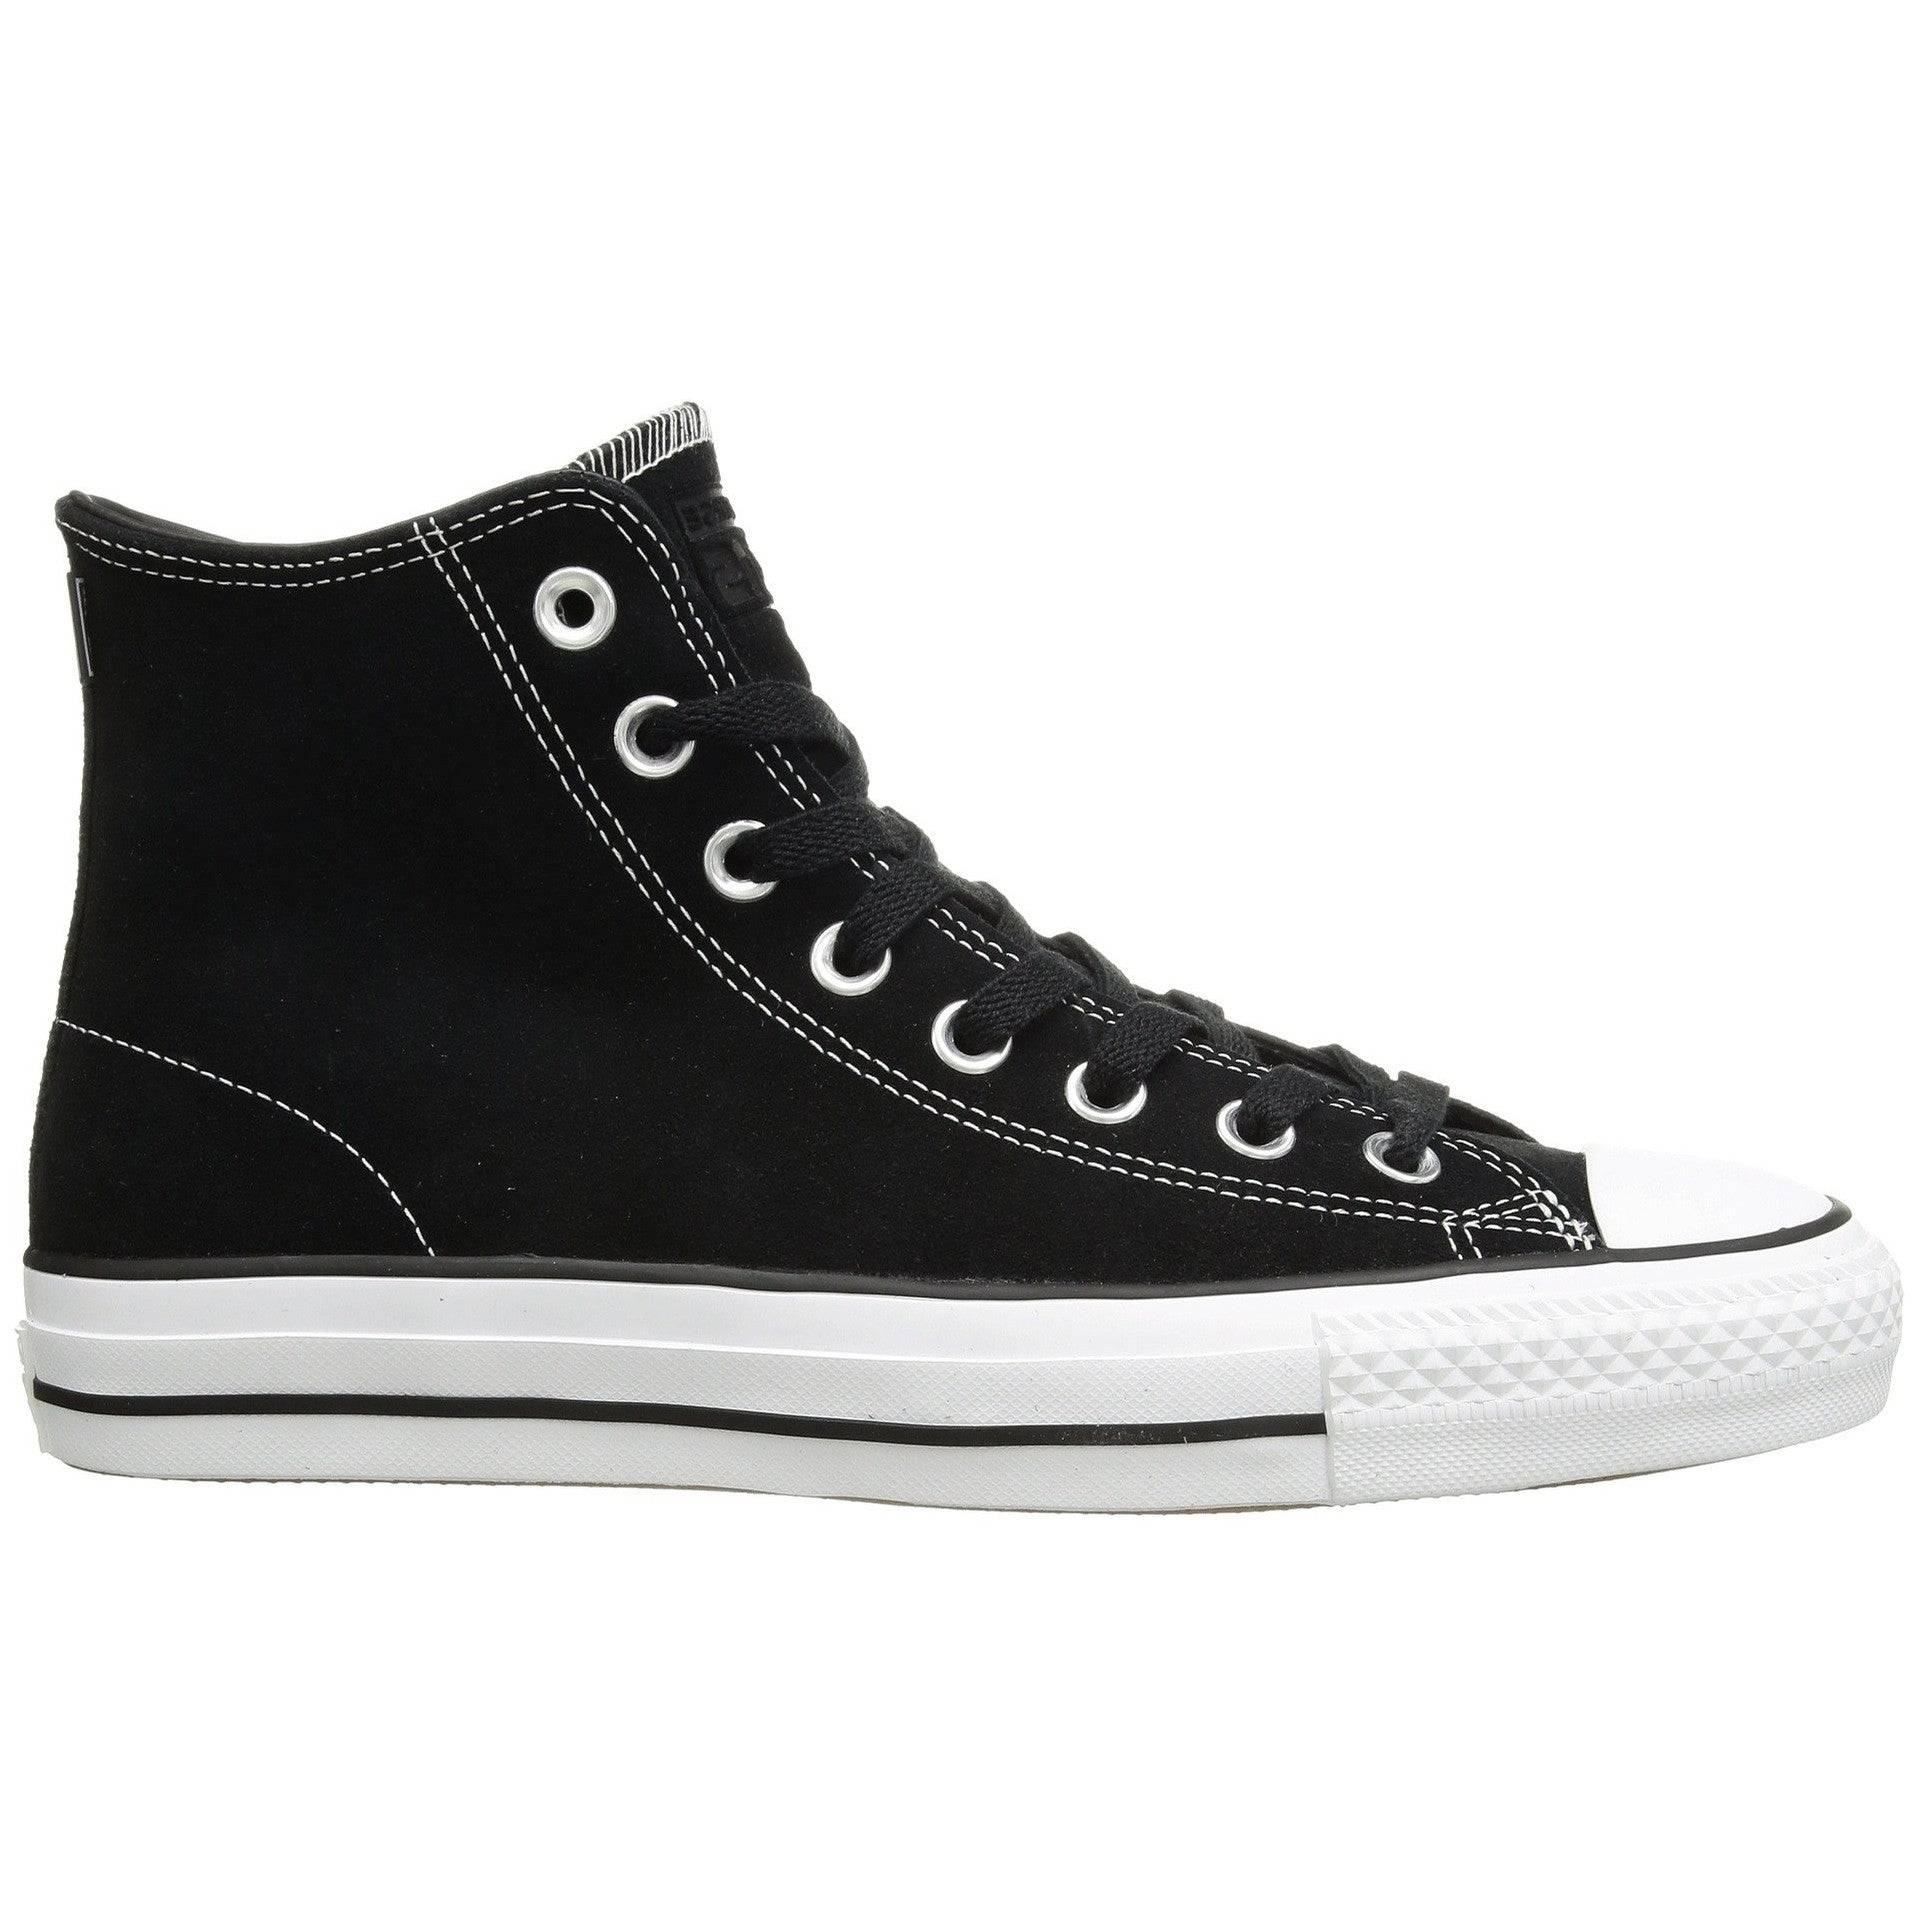 Il Minimaal ader Converse CTAS Pro Hi Skate Shoe in Black Black White – M I L O S P O R T